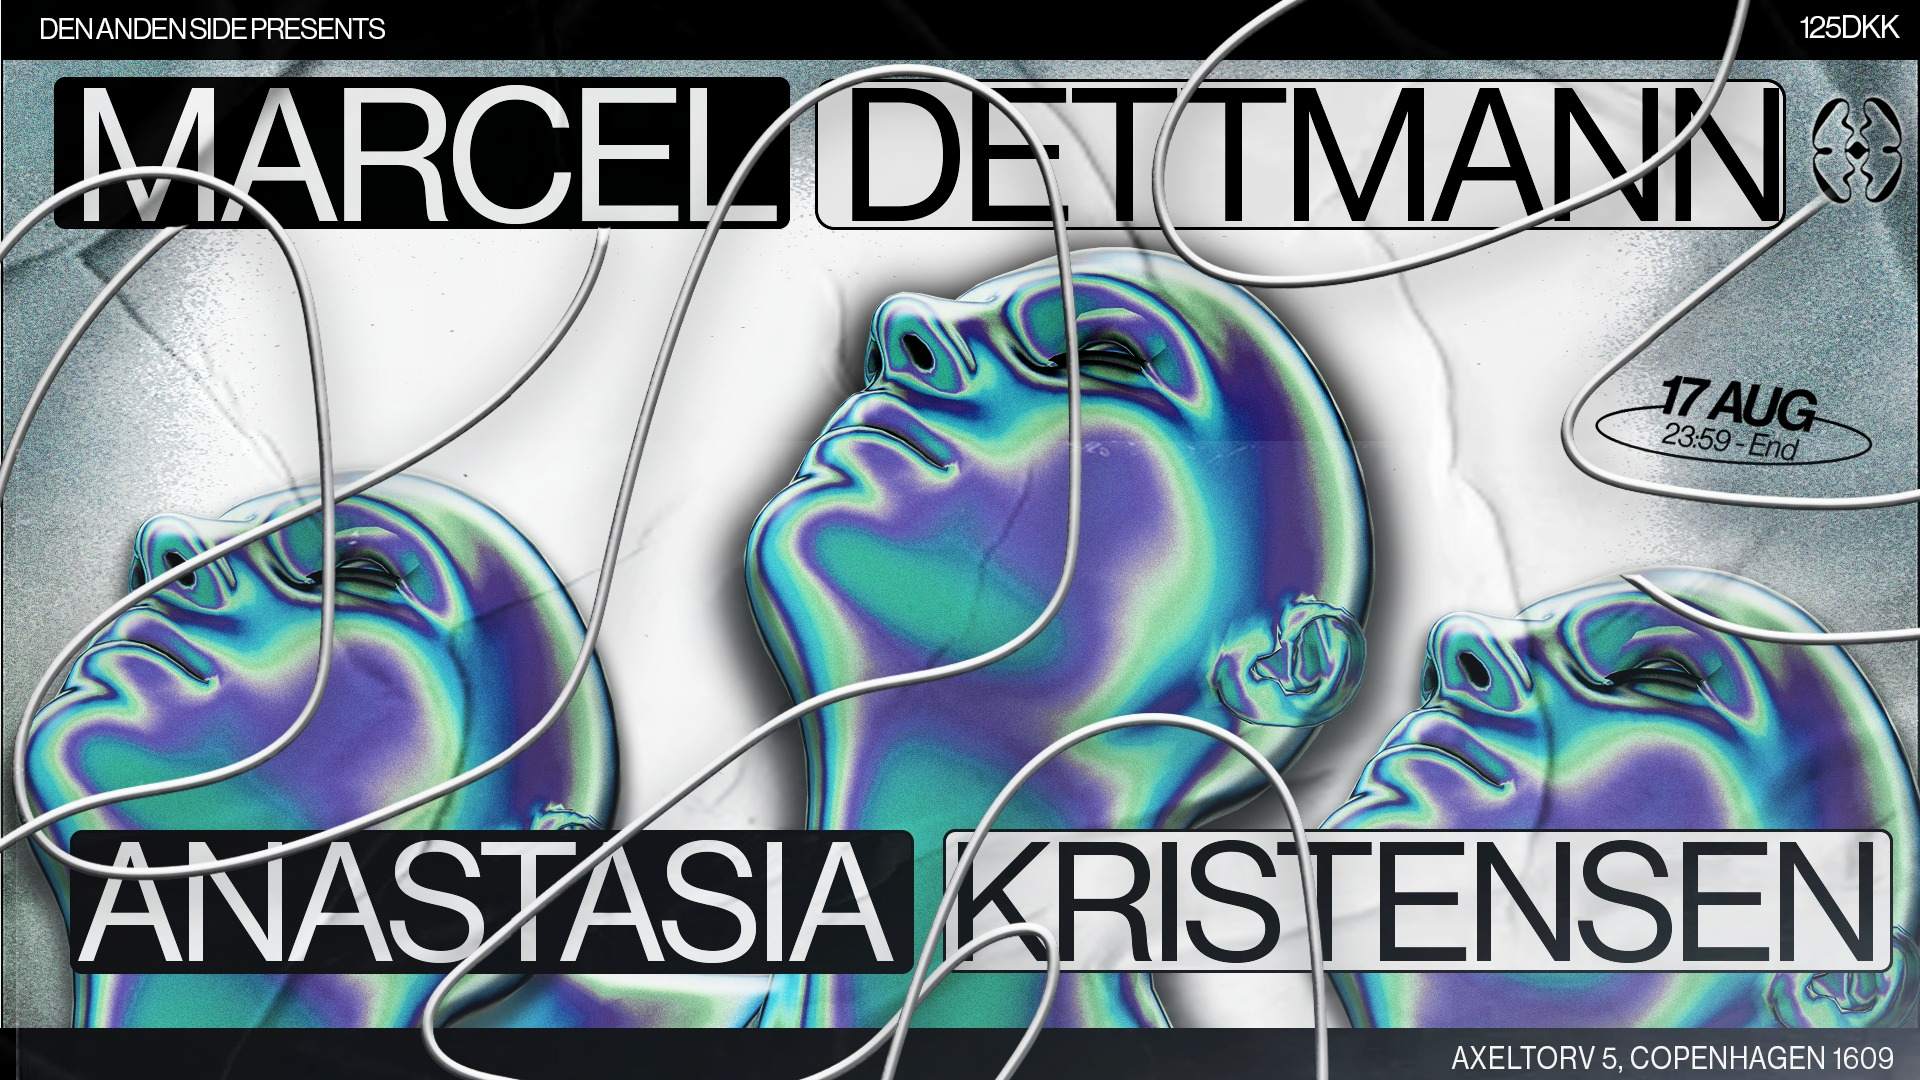 Marcel Dettmann & Anastasia Kristensen - Página frontal